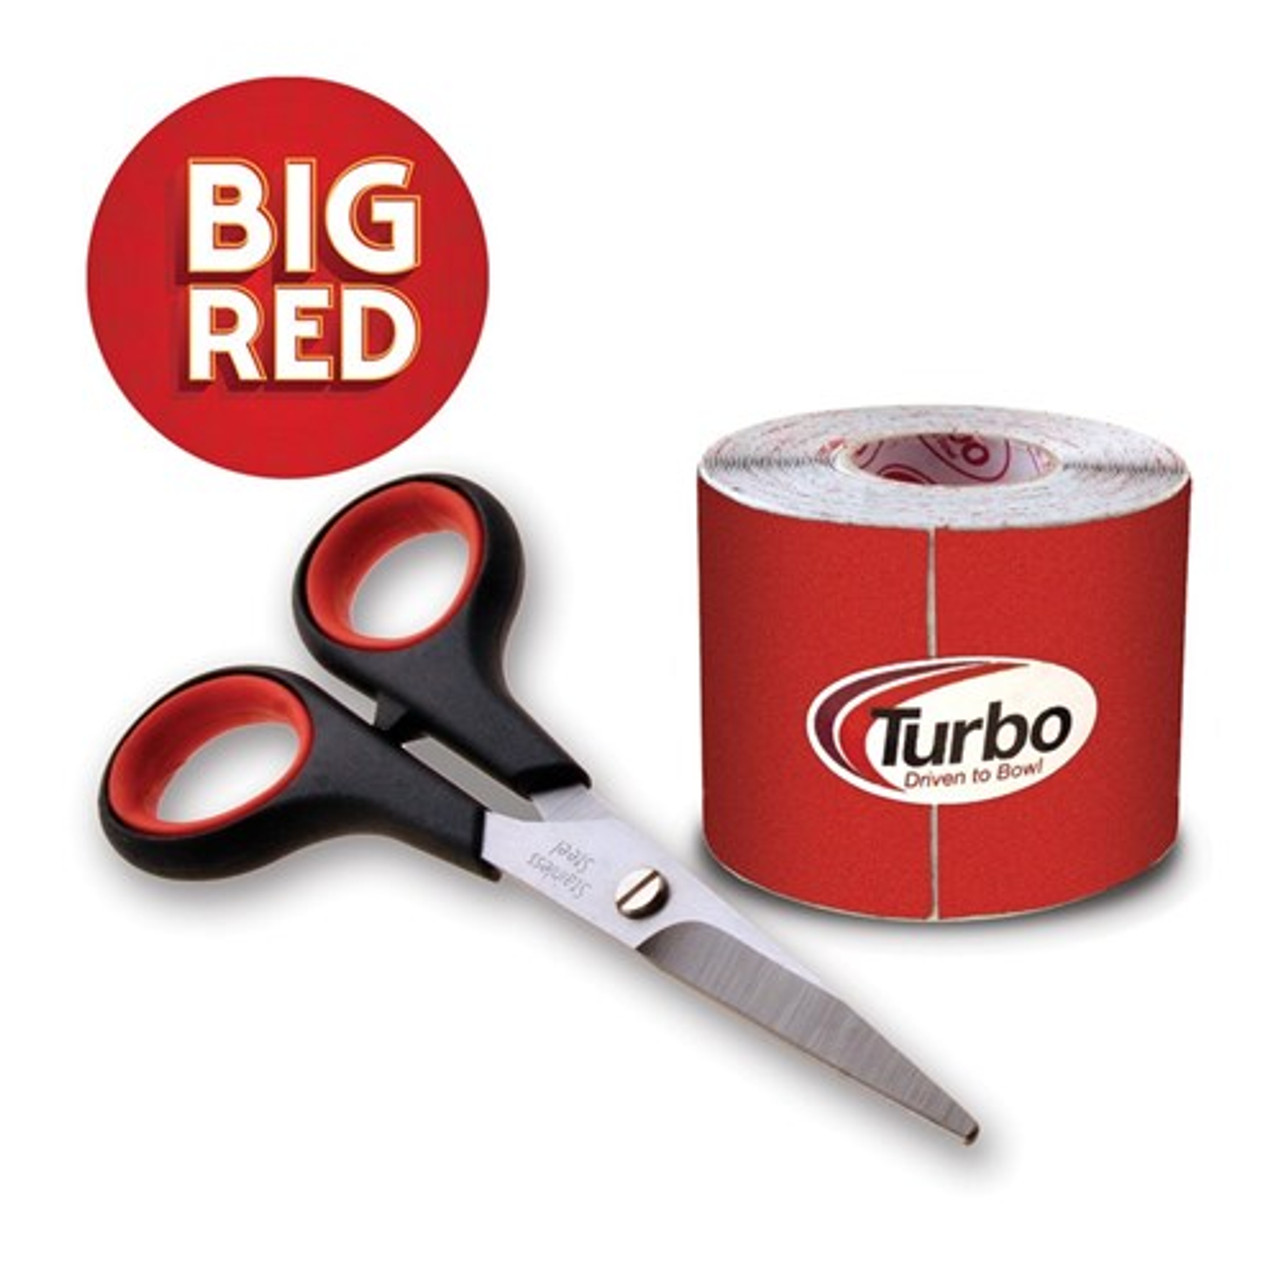 RED 2 :: Tudo Turbo